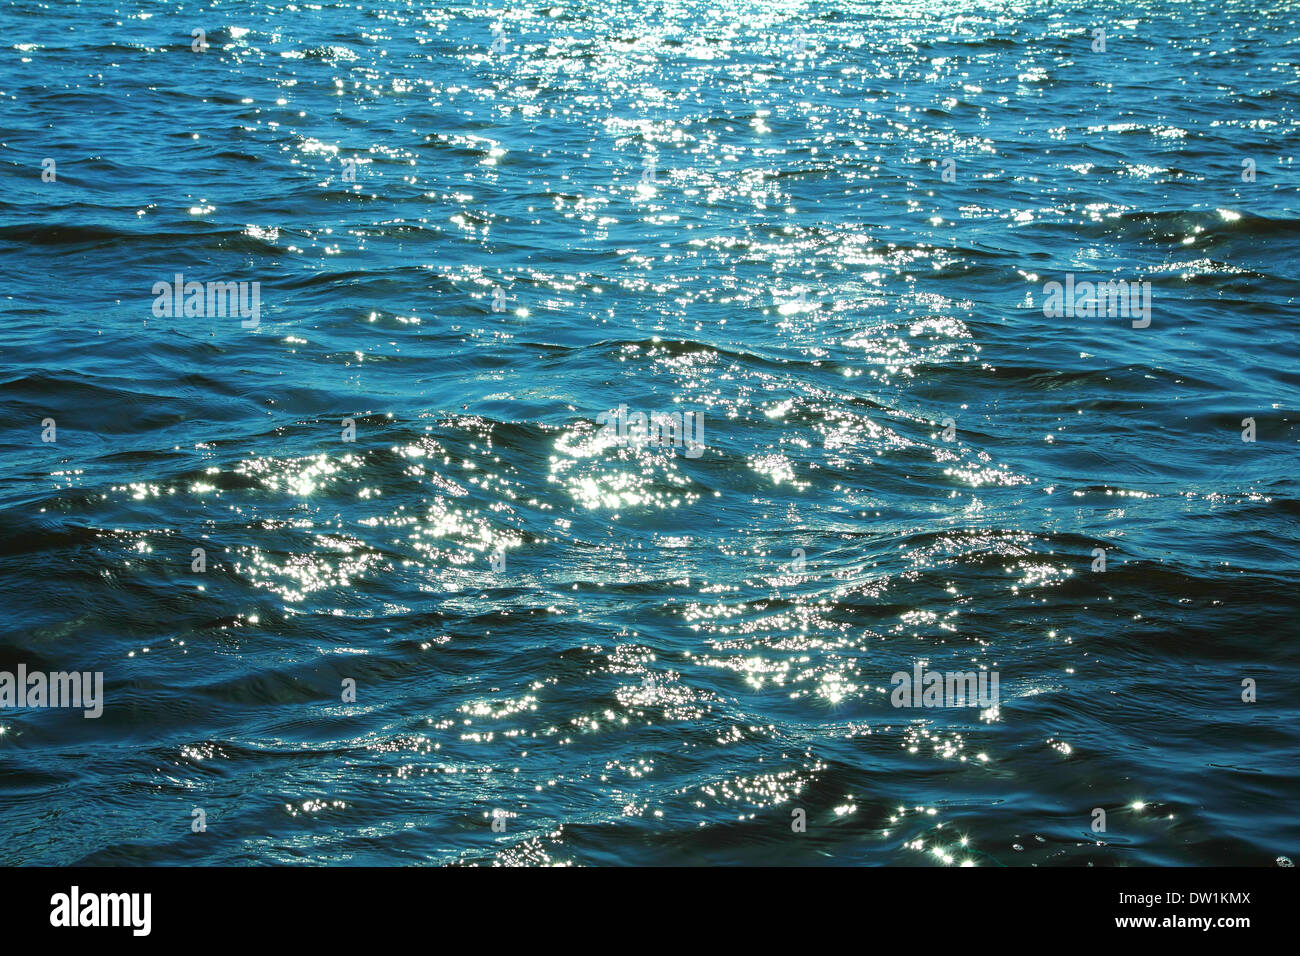 sunlight glare on surface of sea Stock Photo